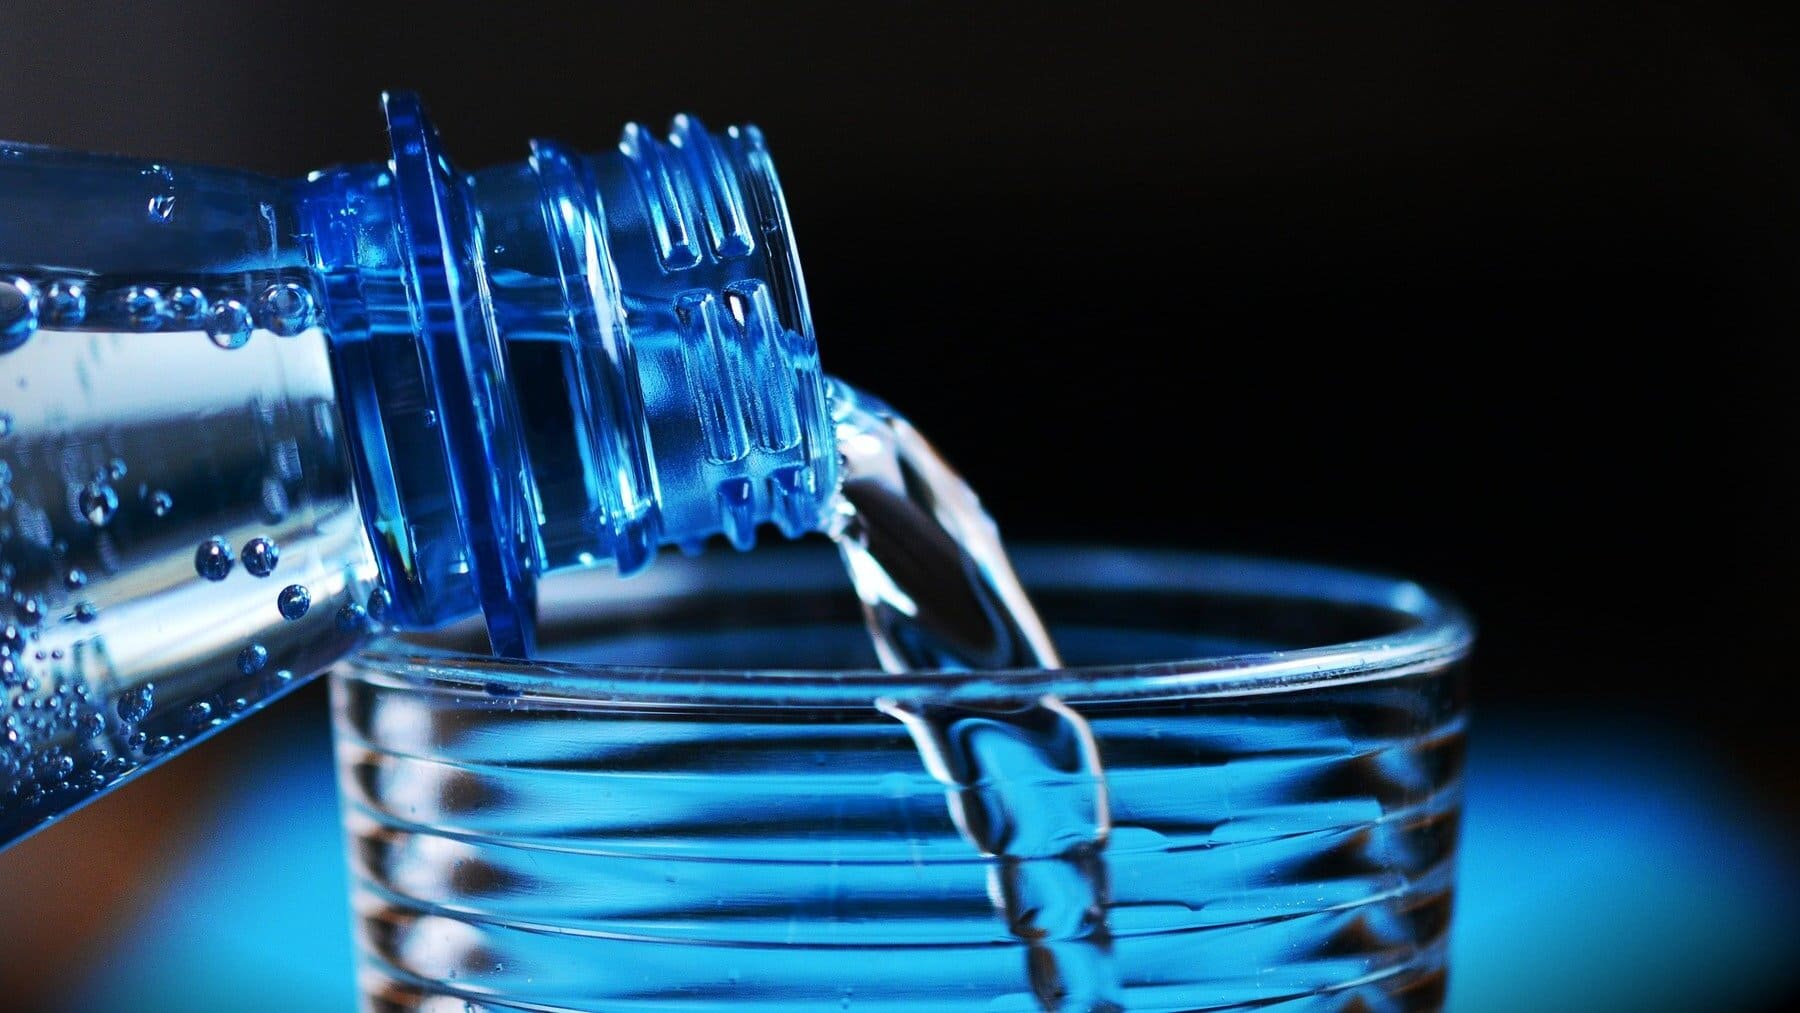 Beber agua de una botella de plástico reutilizada es malo para la salud